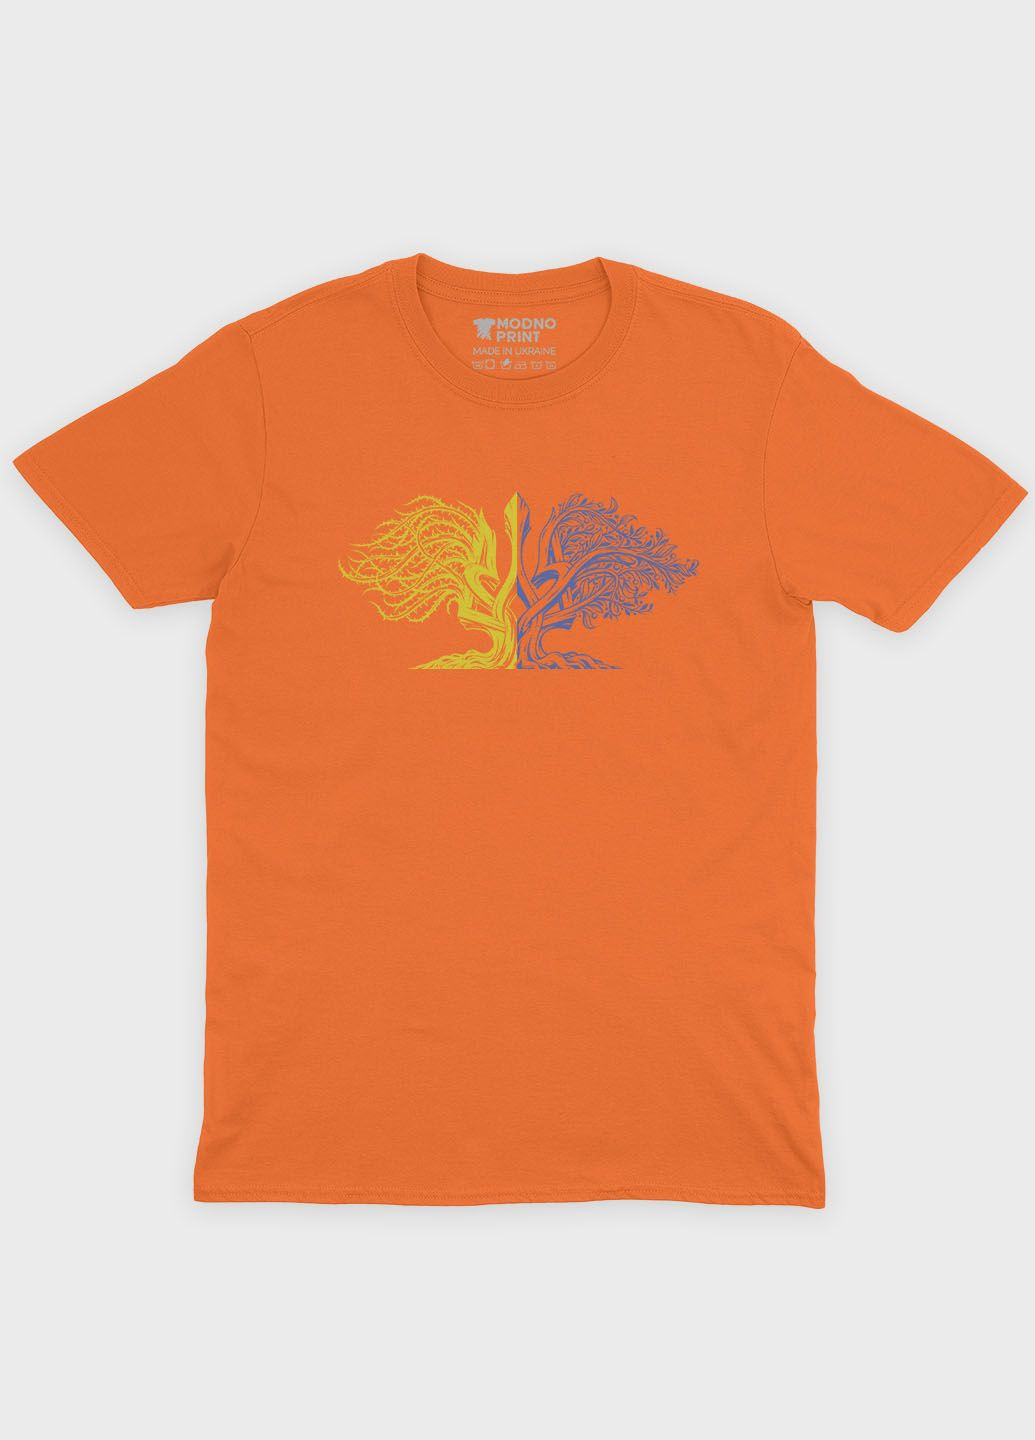 Оранжевая мужская футболка с патриотическим принтом гербтризуб (ts001-1-ora-005-1-026) Modno